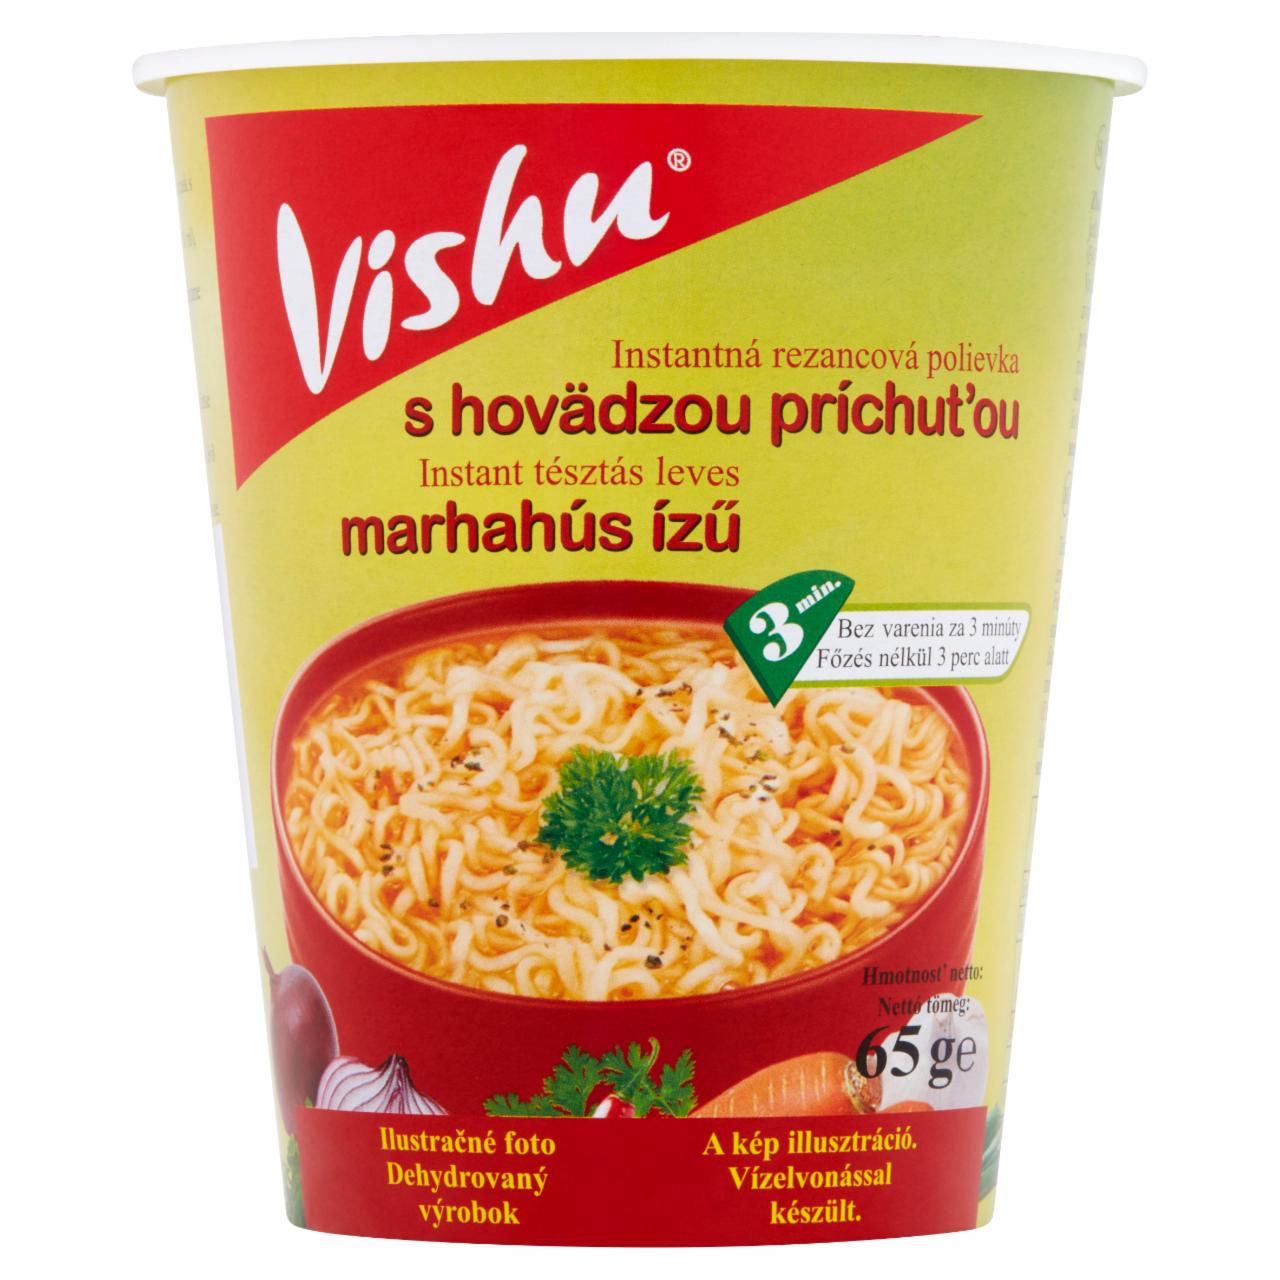 Képek - Vishu marhahús ízű instant tésztás leves 65 g